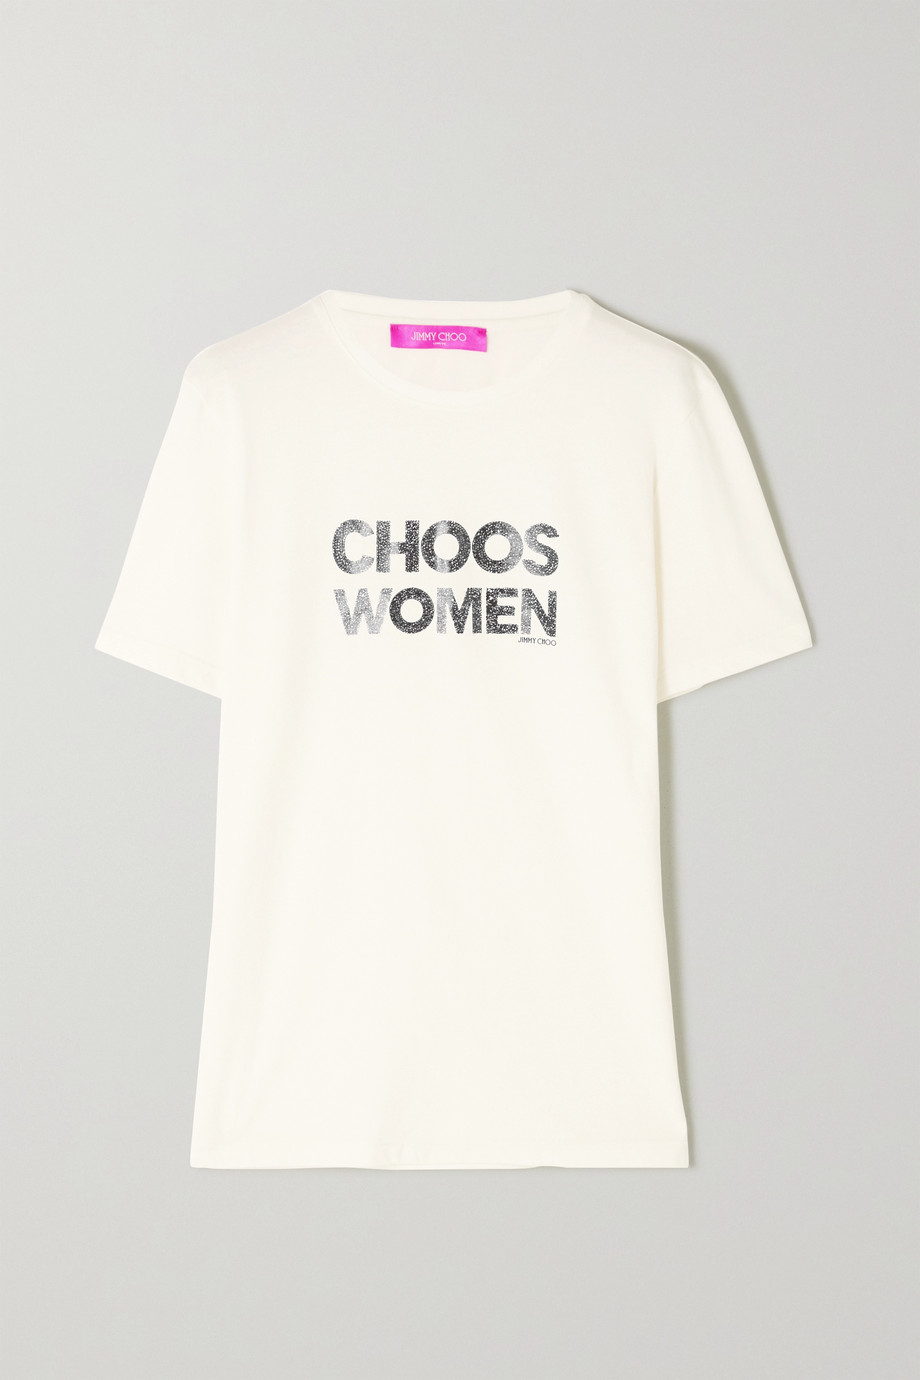 Net-a-Porter x Jimmy Choo International Women's Day T-shirt 2020.